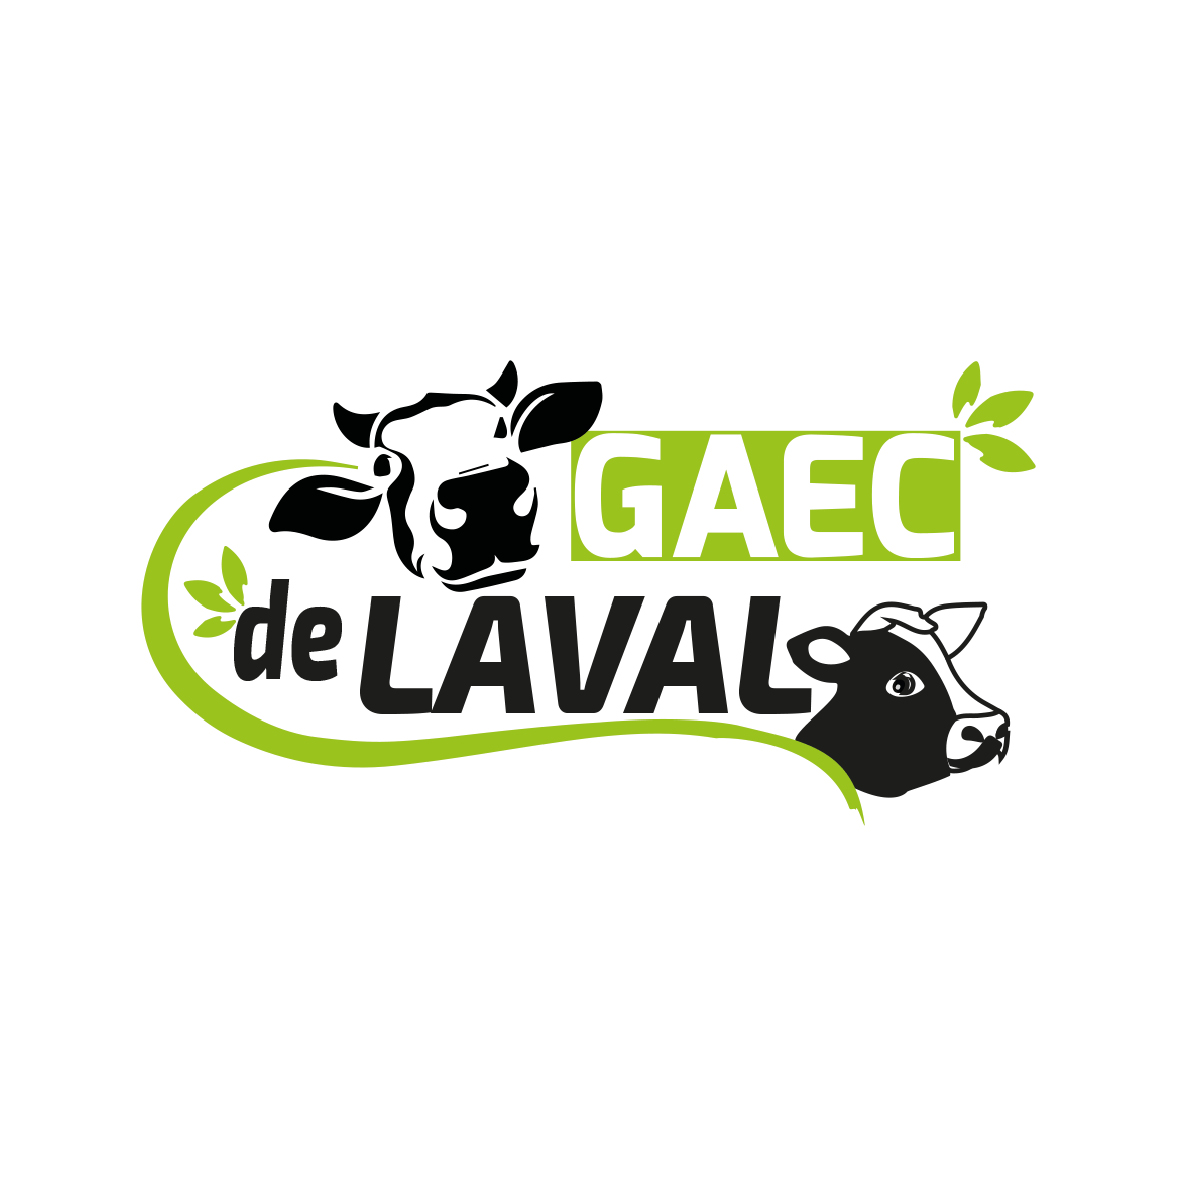 GAEC de Laval